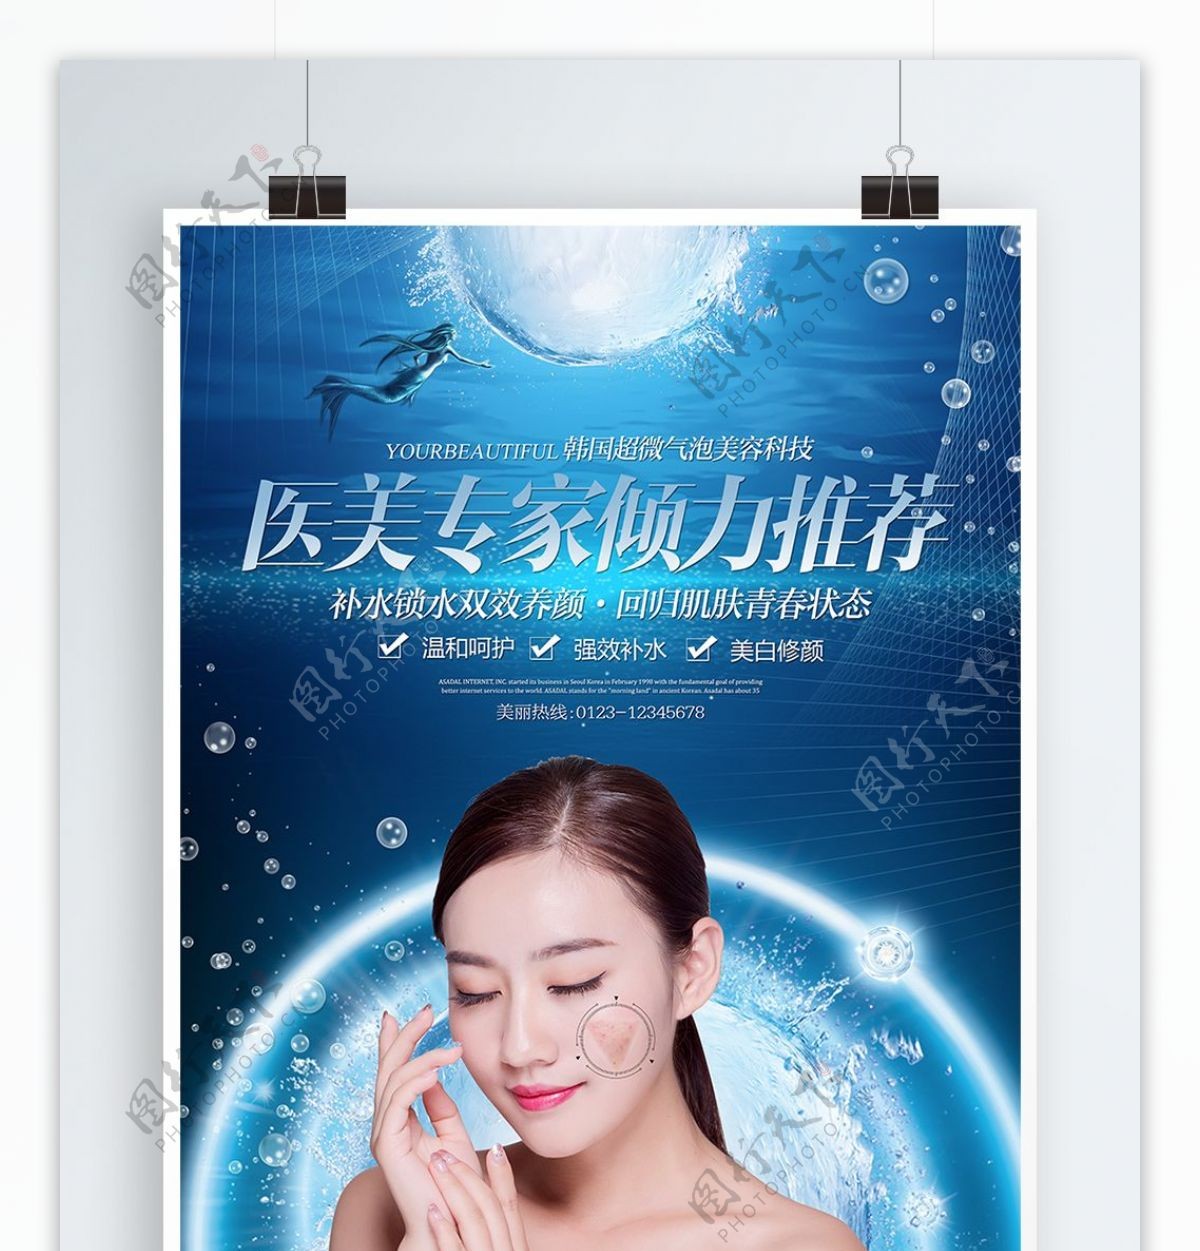 酷炫唯美医学美容整形韩式气泡宣传海报